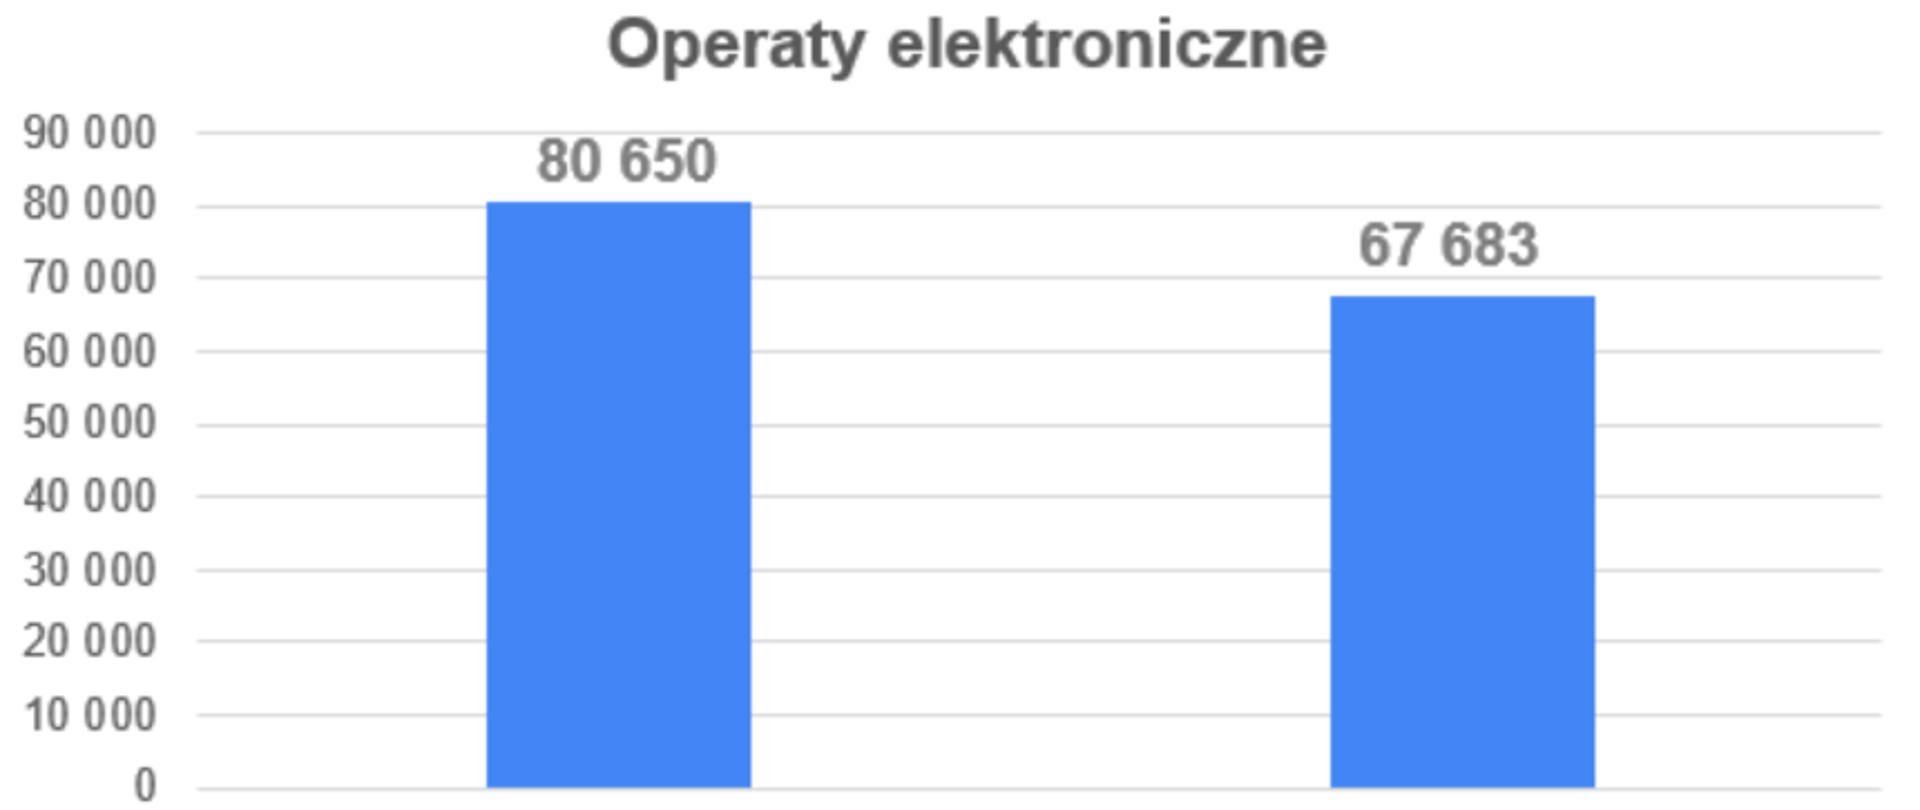 Ilustracja przedstawia wykres, na którym zaznaczona jest liczba operatów przyjętych do PZGiK w styczniu 2022 r.: wszystkich - 80 650, elektronicznych 67 683.